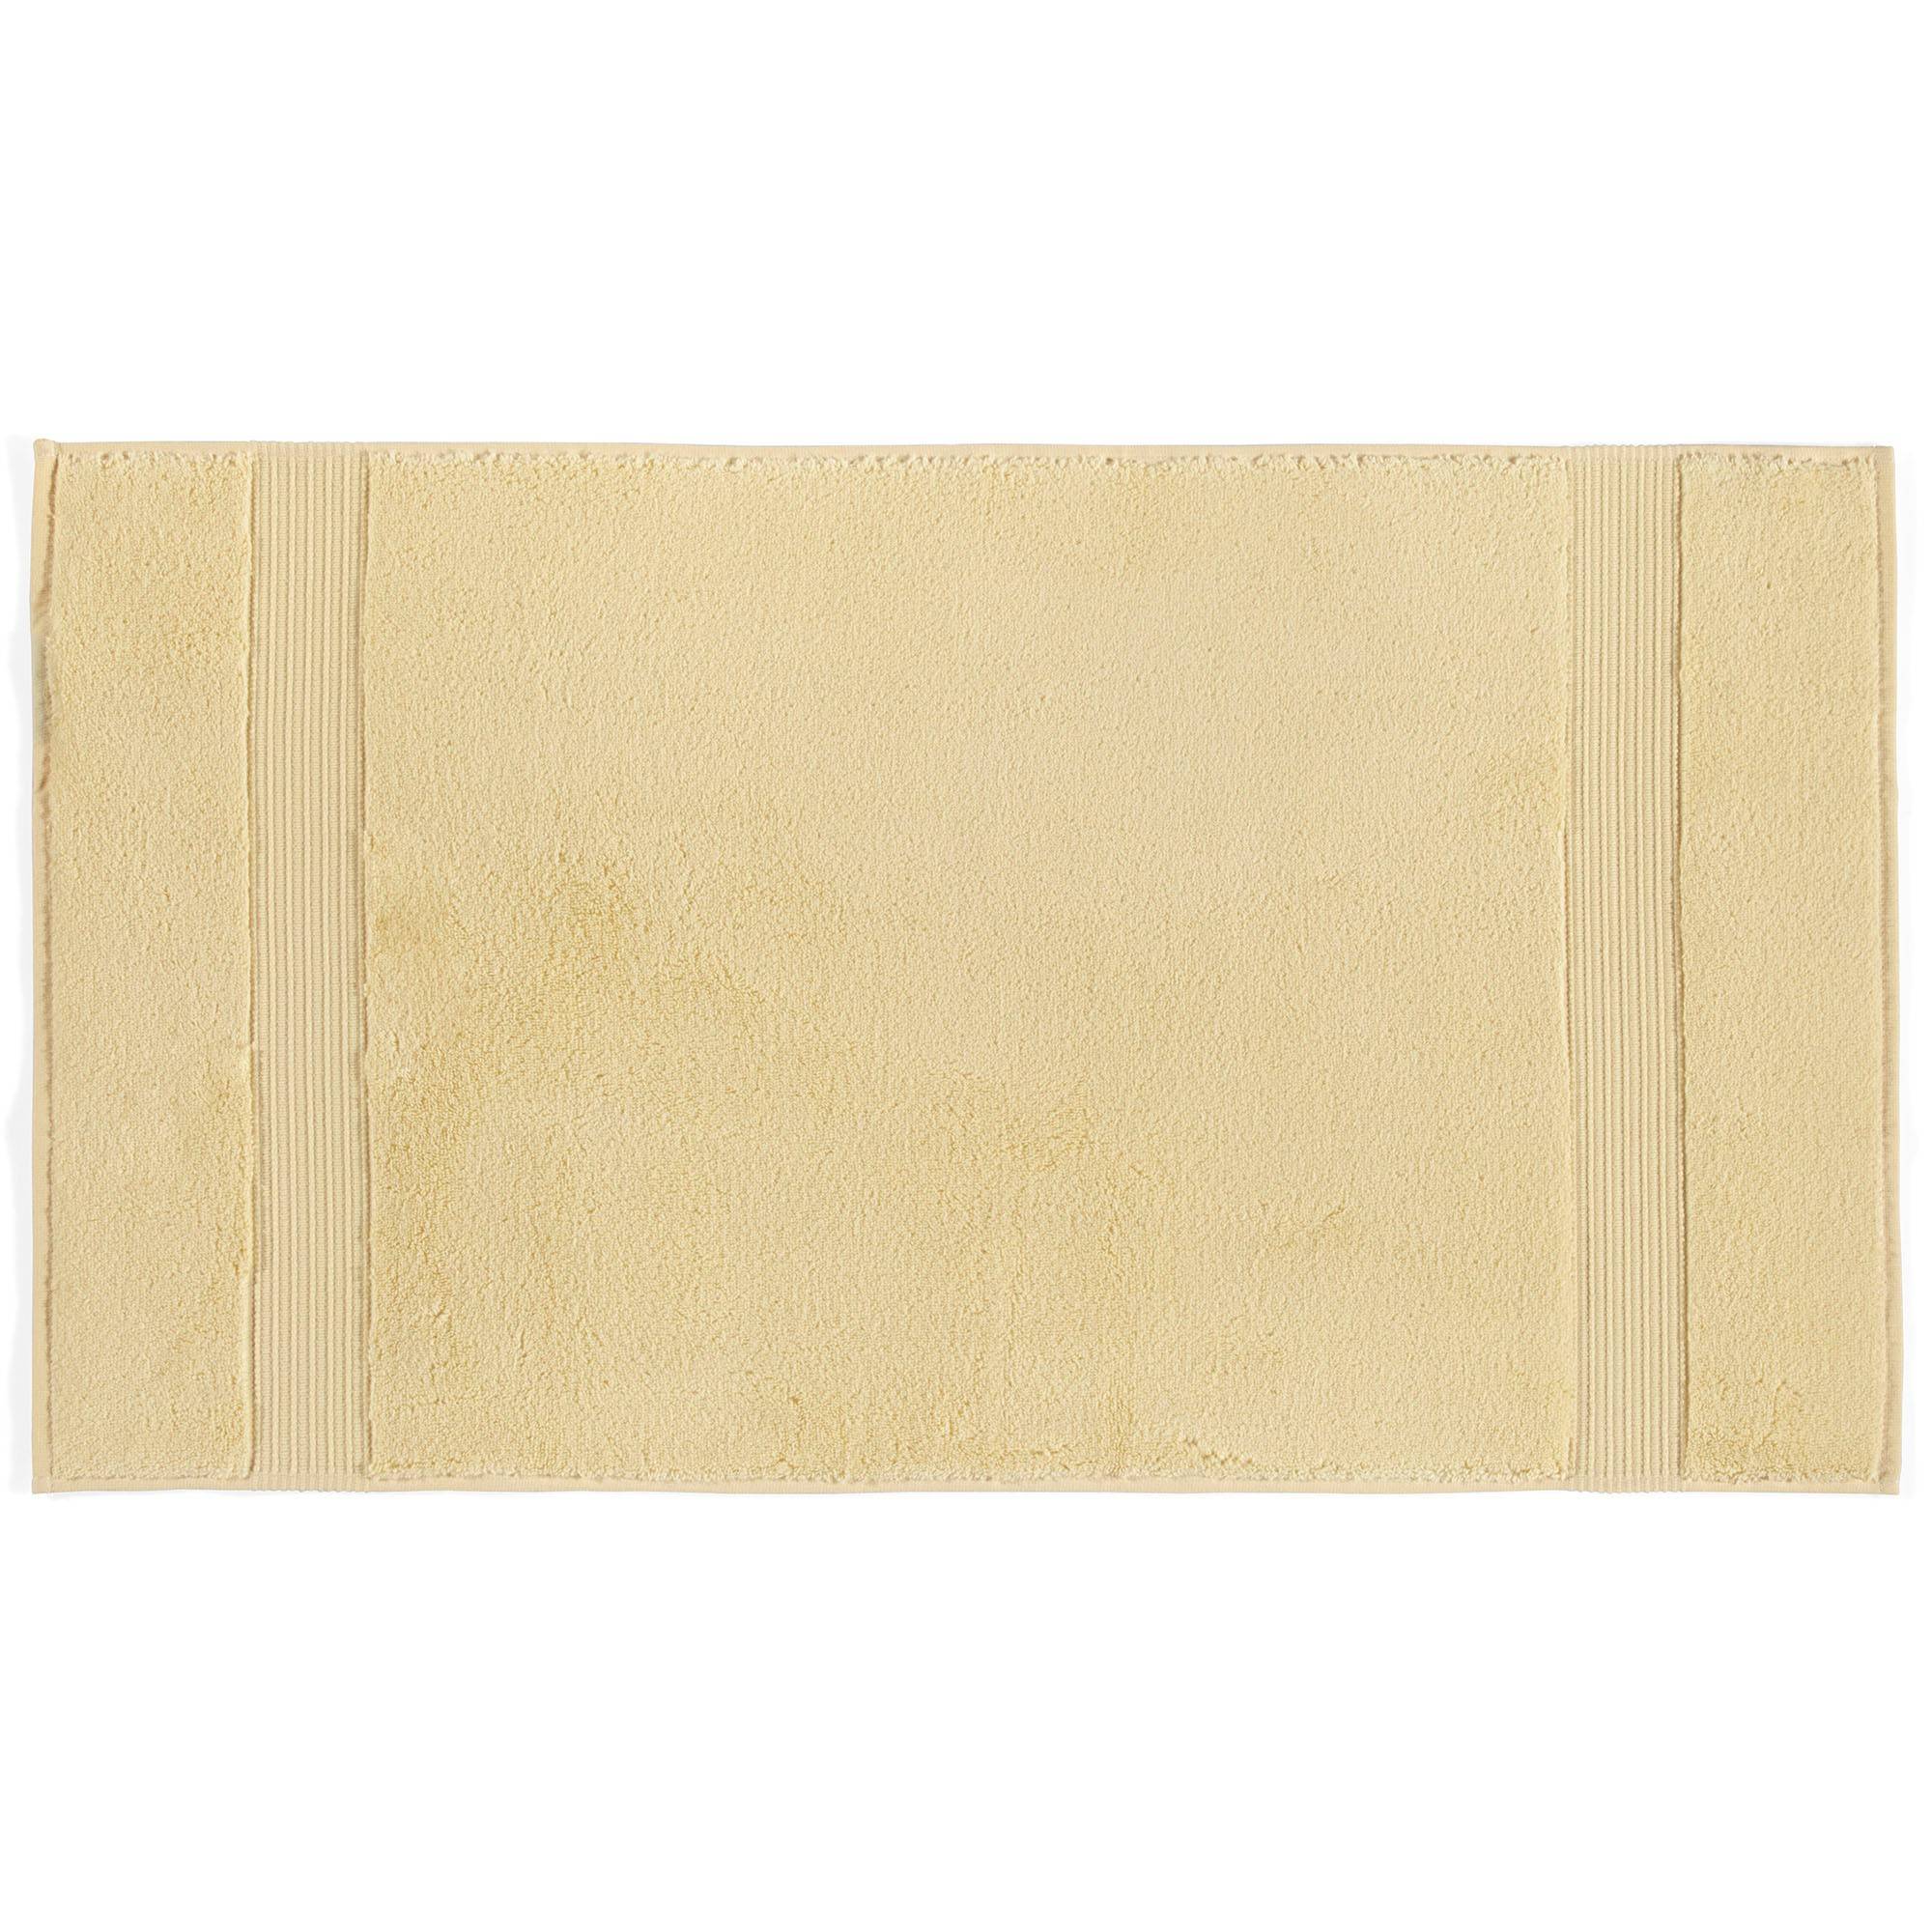 Crinitus Handtuch aus 100% Baumwolle Gelb